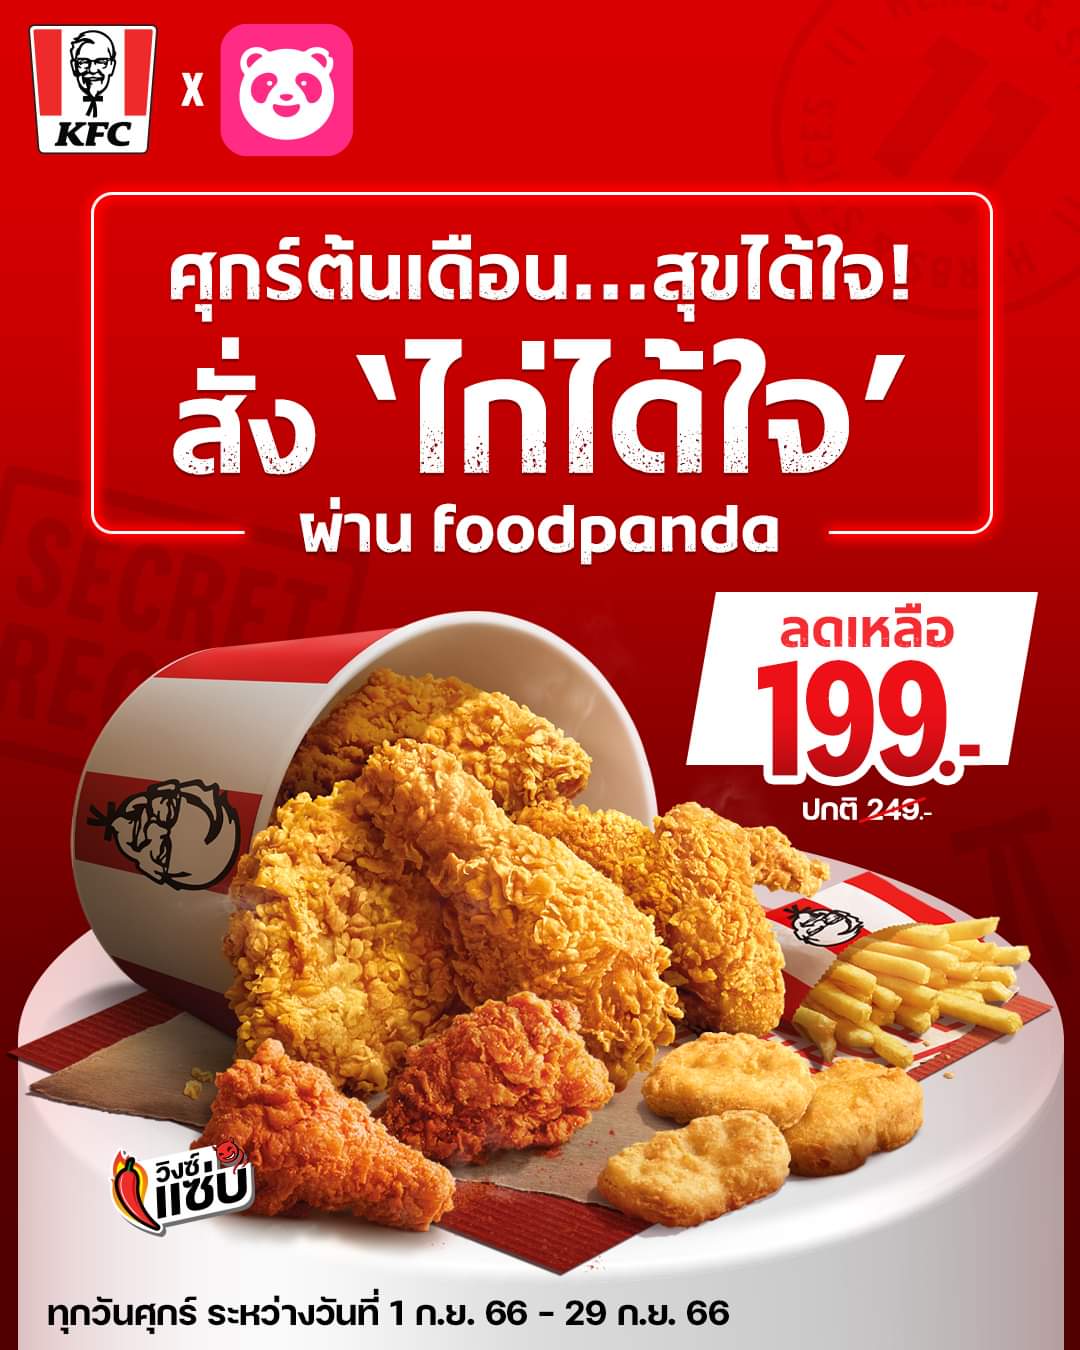 โปรโมชั่น เคเอฟซี : สุขได้ใจทันที แค่สั่ง KFC ชุดไก่ได้ใจ ผ่าน Foodpanda จ่ายเบา ๆ แค่ 199.-